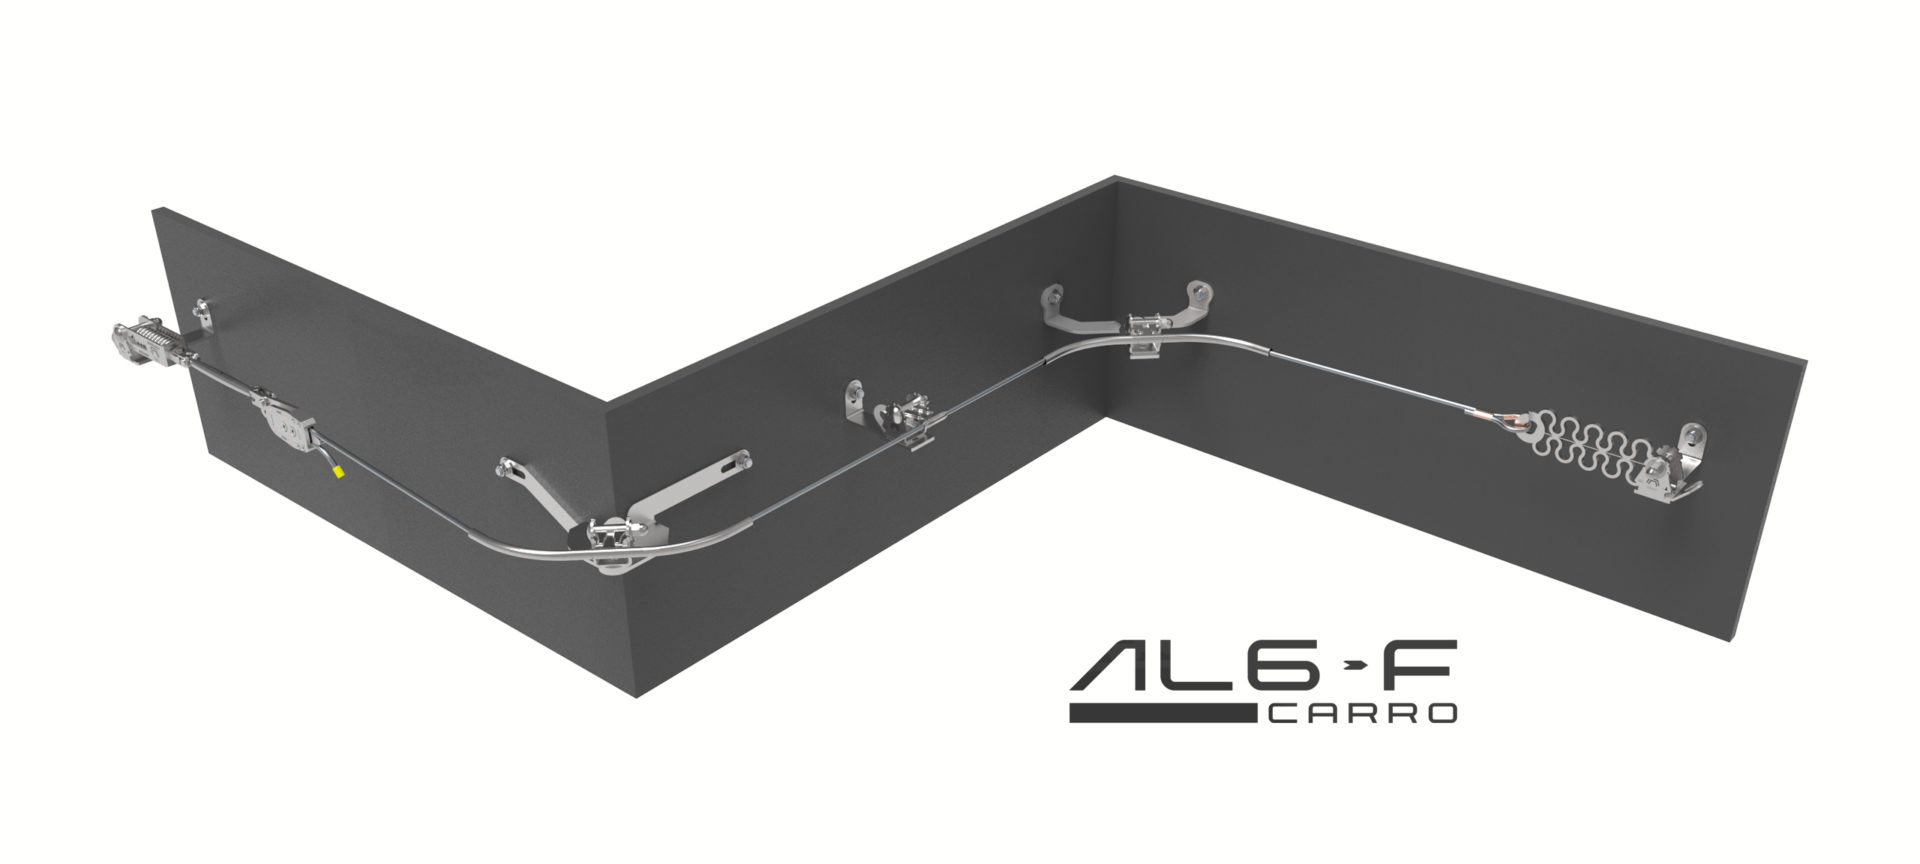 Esquema AL6F de carro de traslacion-líneas de anclaje flexibles definitivas-PARED-Creaciones Preventivas